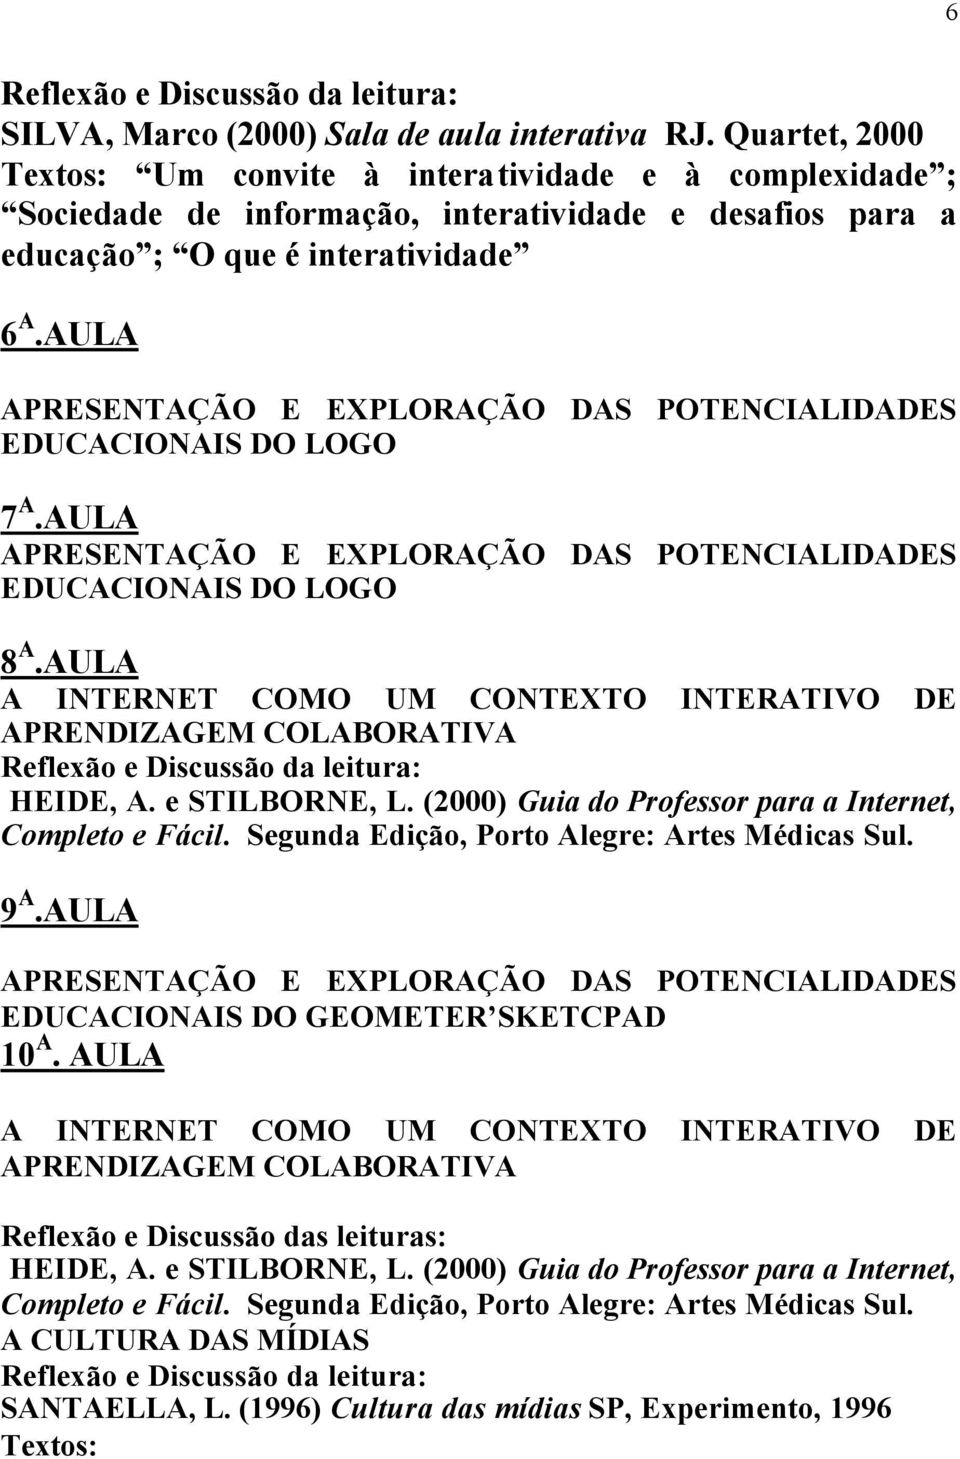 AULA EDUCACIONAIS DO LOGO 8 A.AULA A INTERNET COMO UM CONTEXTO INTERATIVO DE APRENDIZAGEM COLABORATIVA HEIDE, A. e STILBORNE, L. (2000) Guia do Professor para a Internet, Completo e Fácil.